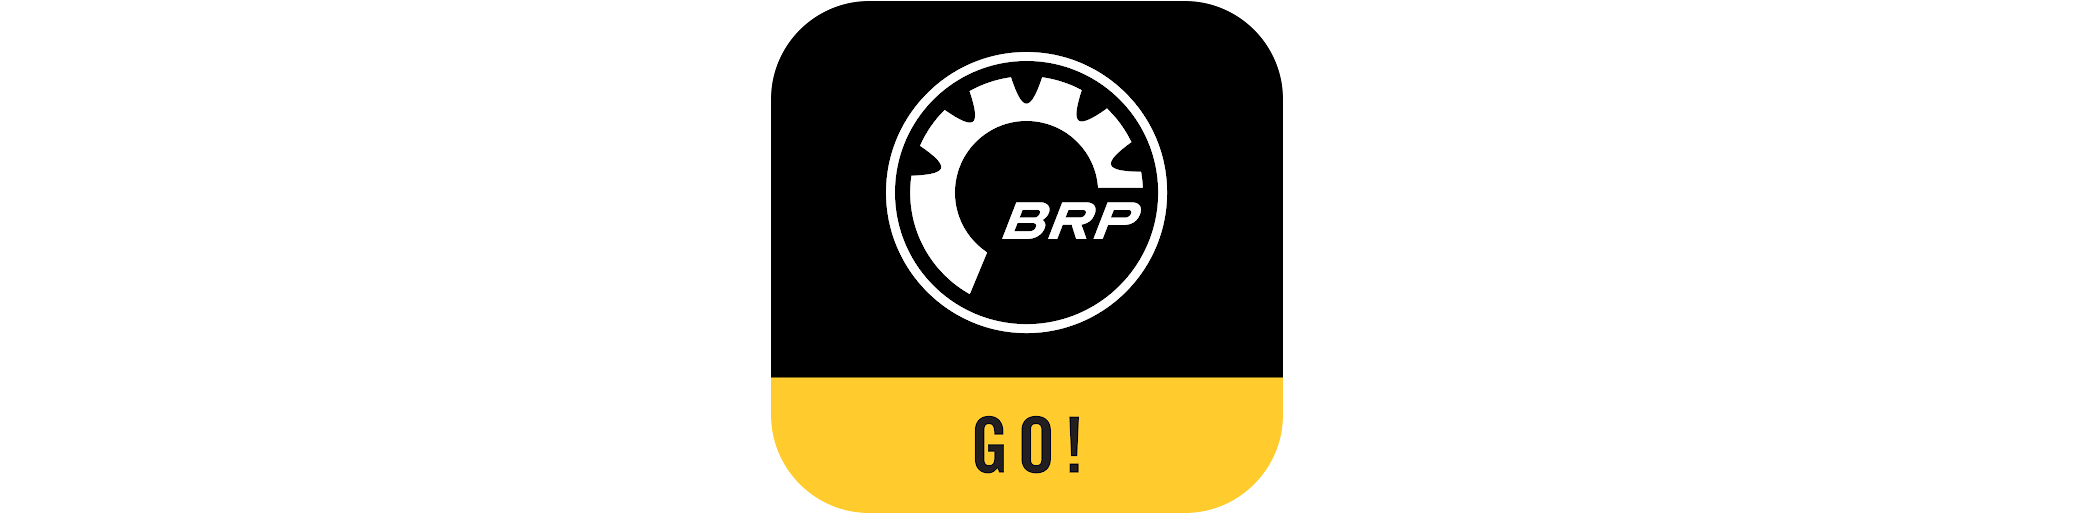 Logo application BRP GO! 